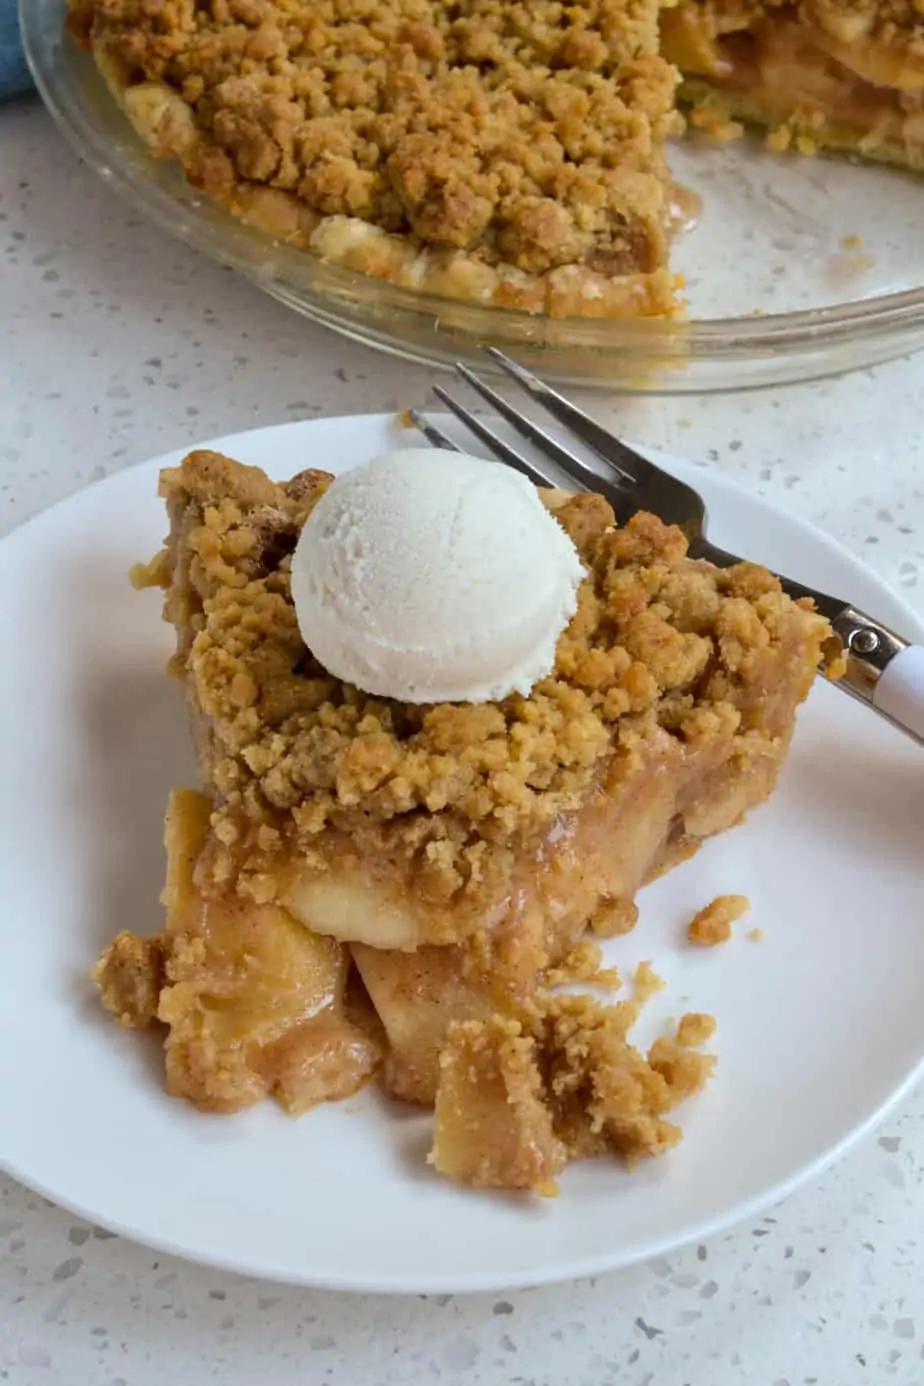 Apple Crumb Pie with vanilla ice cream. 